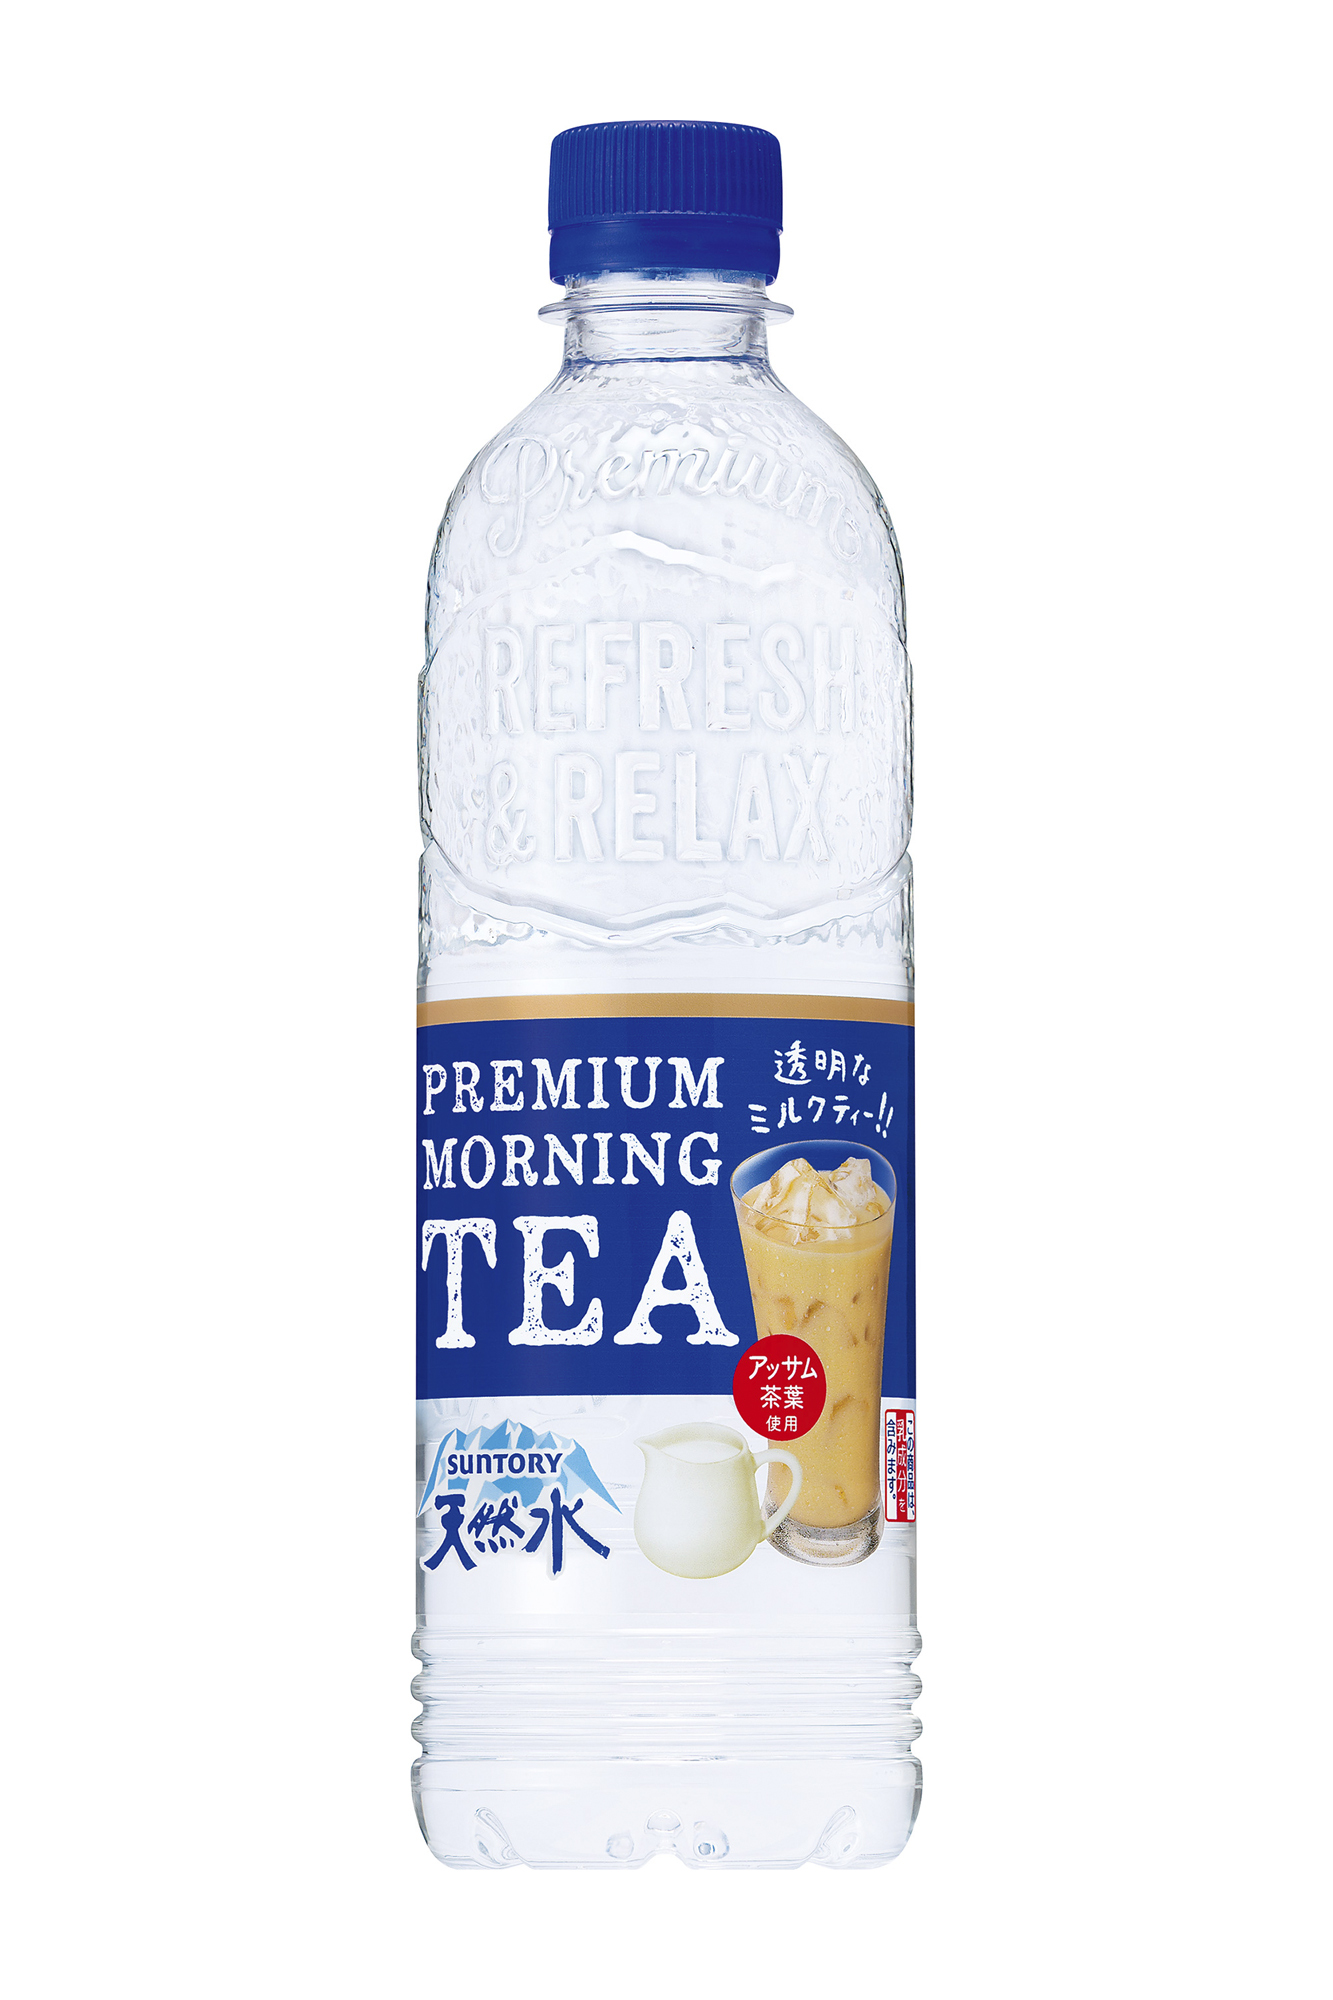 Nước lọc vị trà sữa Premium Morning Tea Suntory - 550ml